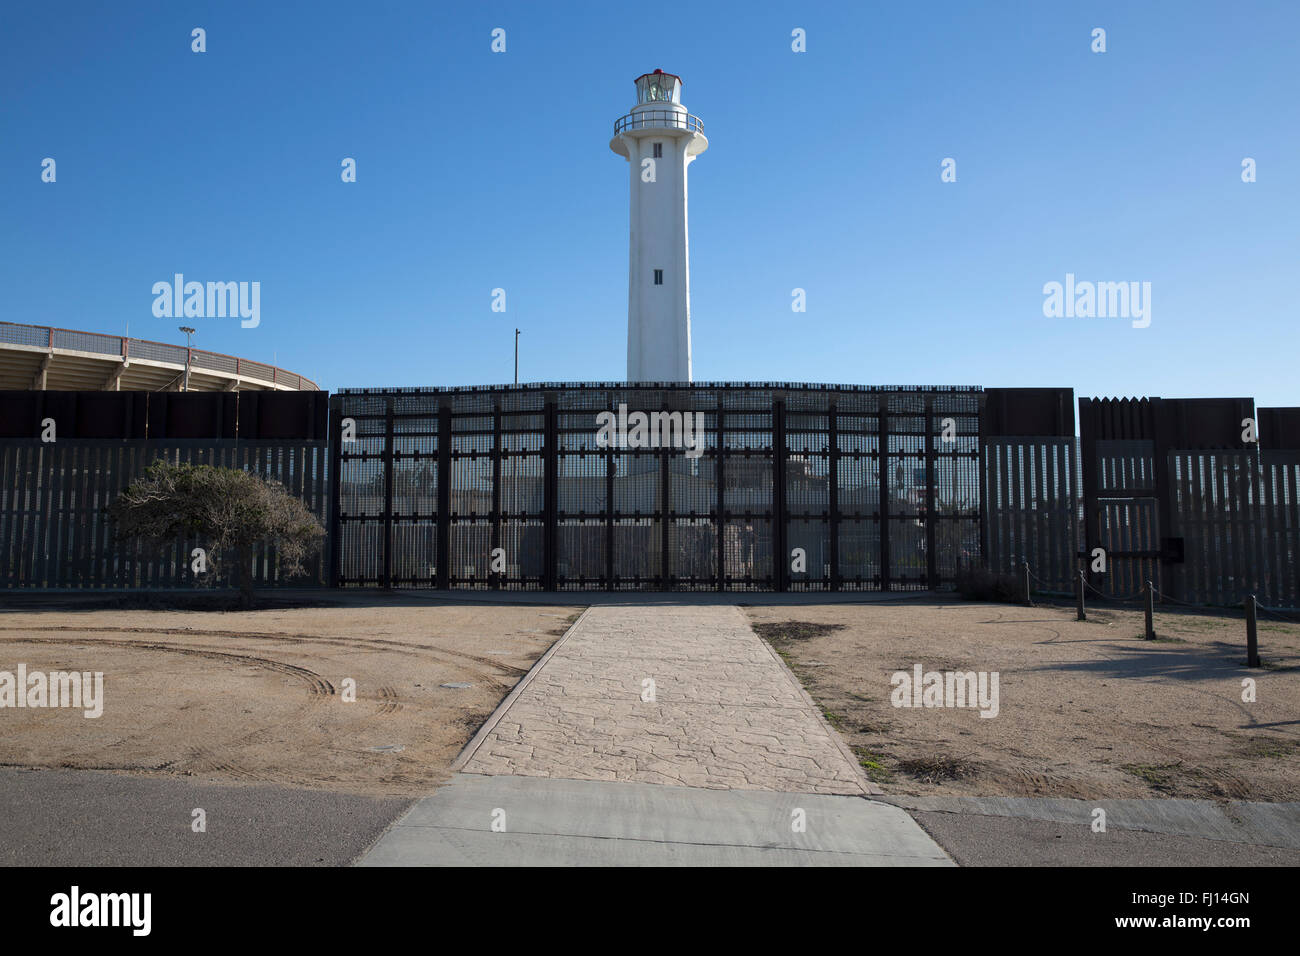 Clôture frontalière et parc de l'Amitié Internationale du côté américain de la frontière avec le Mexique, Tijuana Banque D'Images